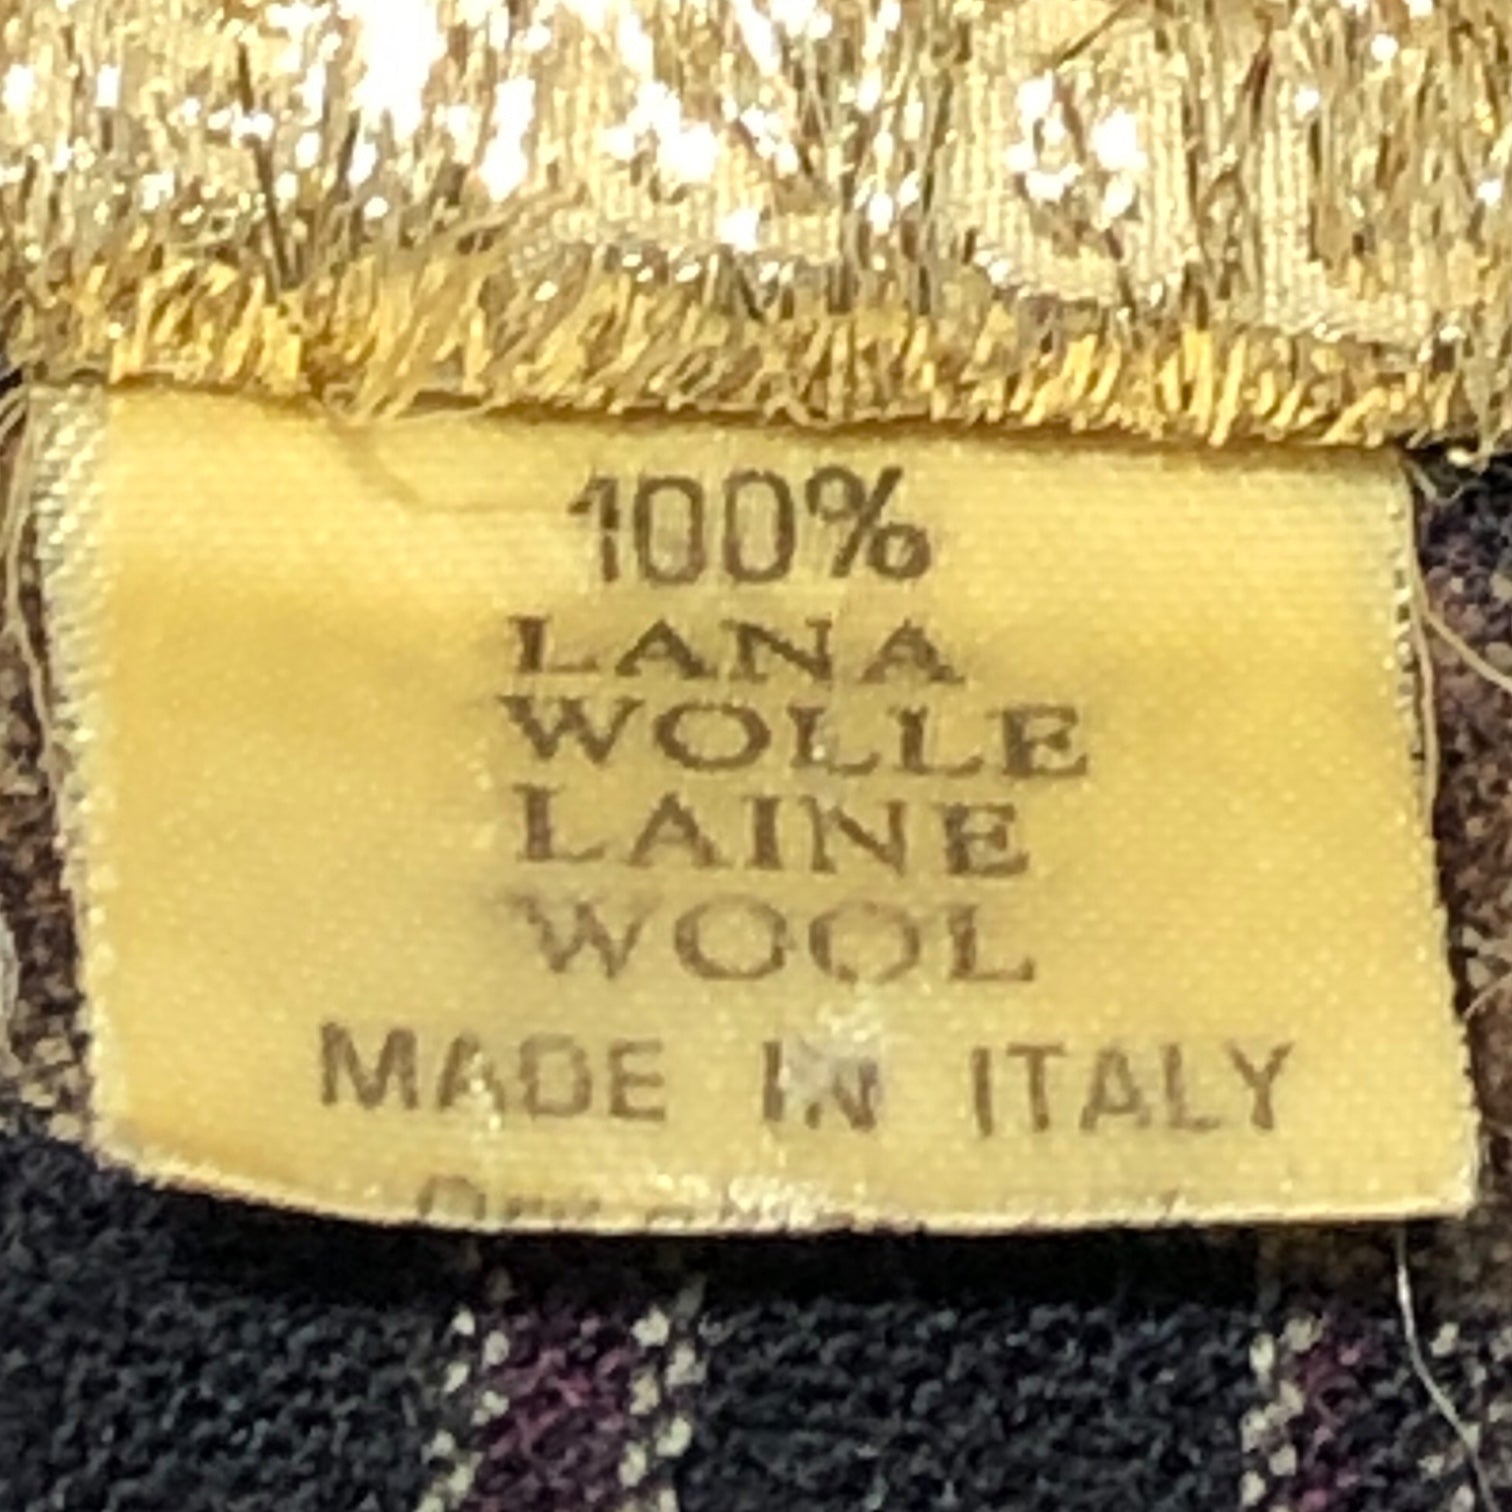 CLAUDE MONTANA(クロードモンタナ) 80's Wool check pullover short blouson ウール チェック プルオーバー 短丈 ブルゾン MOD.713 ART.6107 表記なし(L～XL程度) ブラウン×ブラック MADE IN ITALY